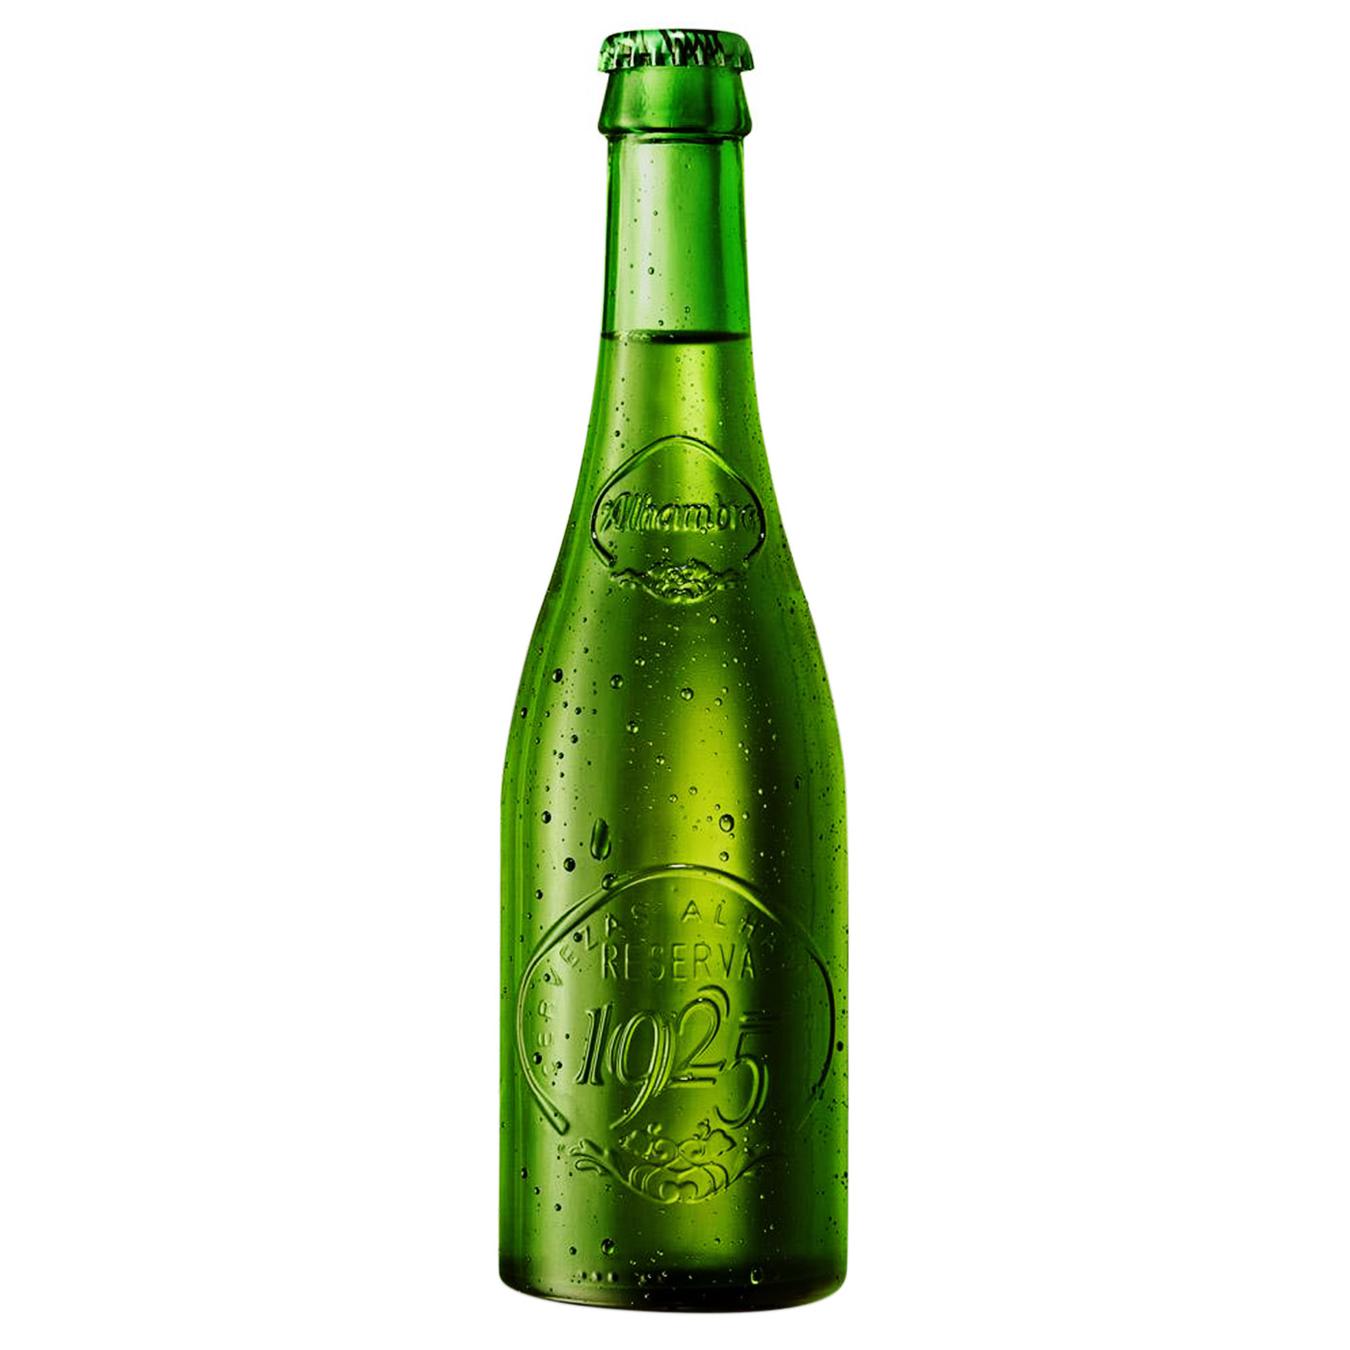 Light beer Alhambra Reserva 1925 6.4% 0.33l glass